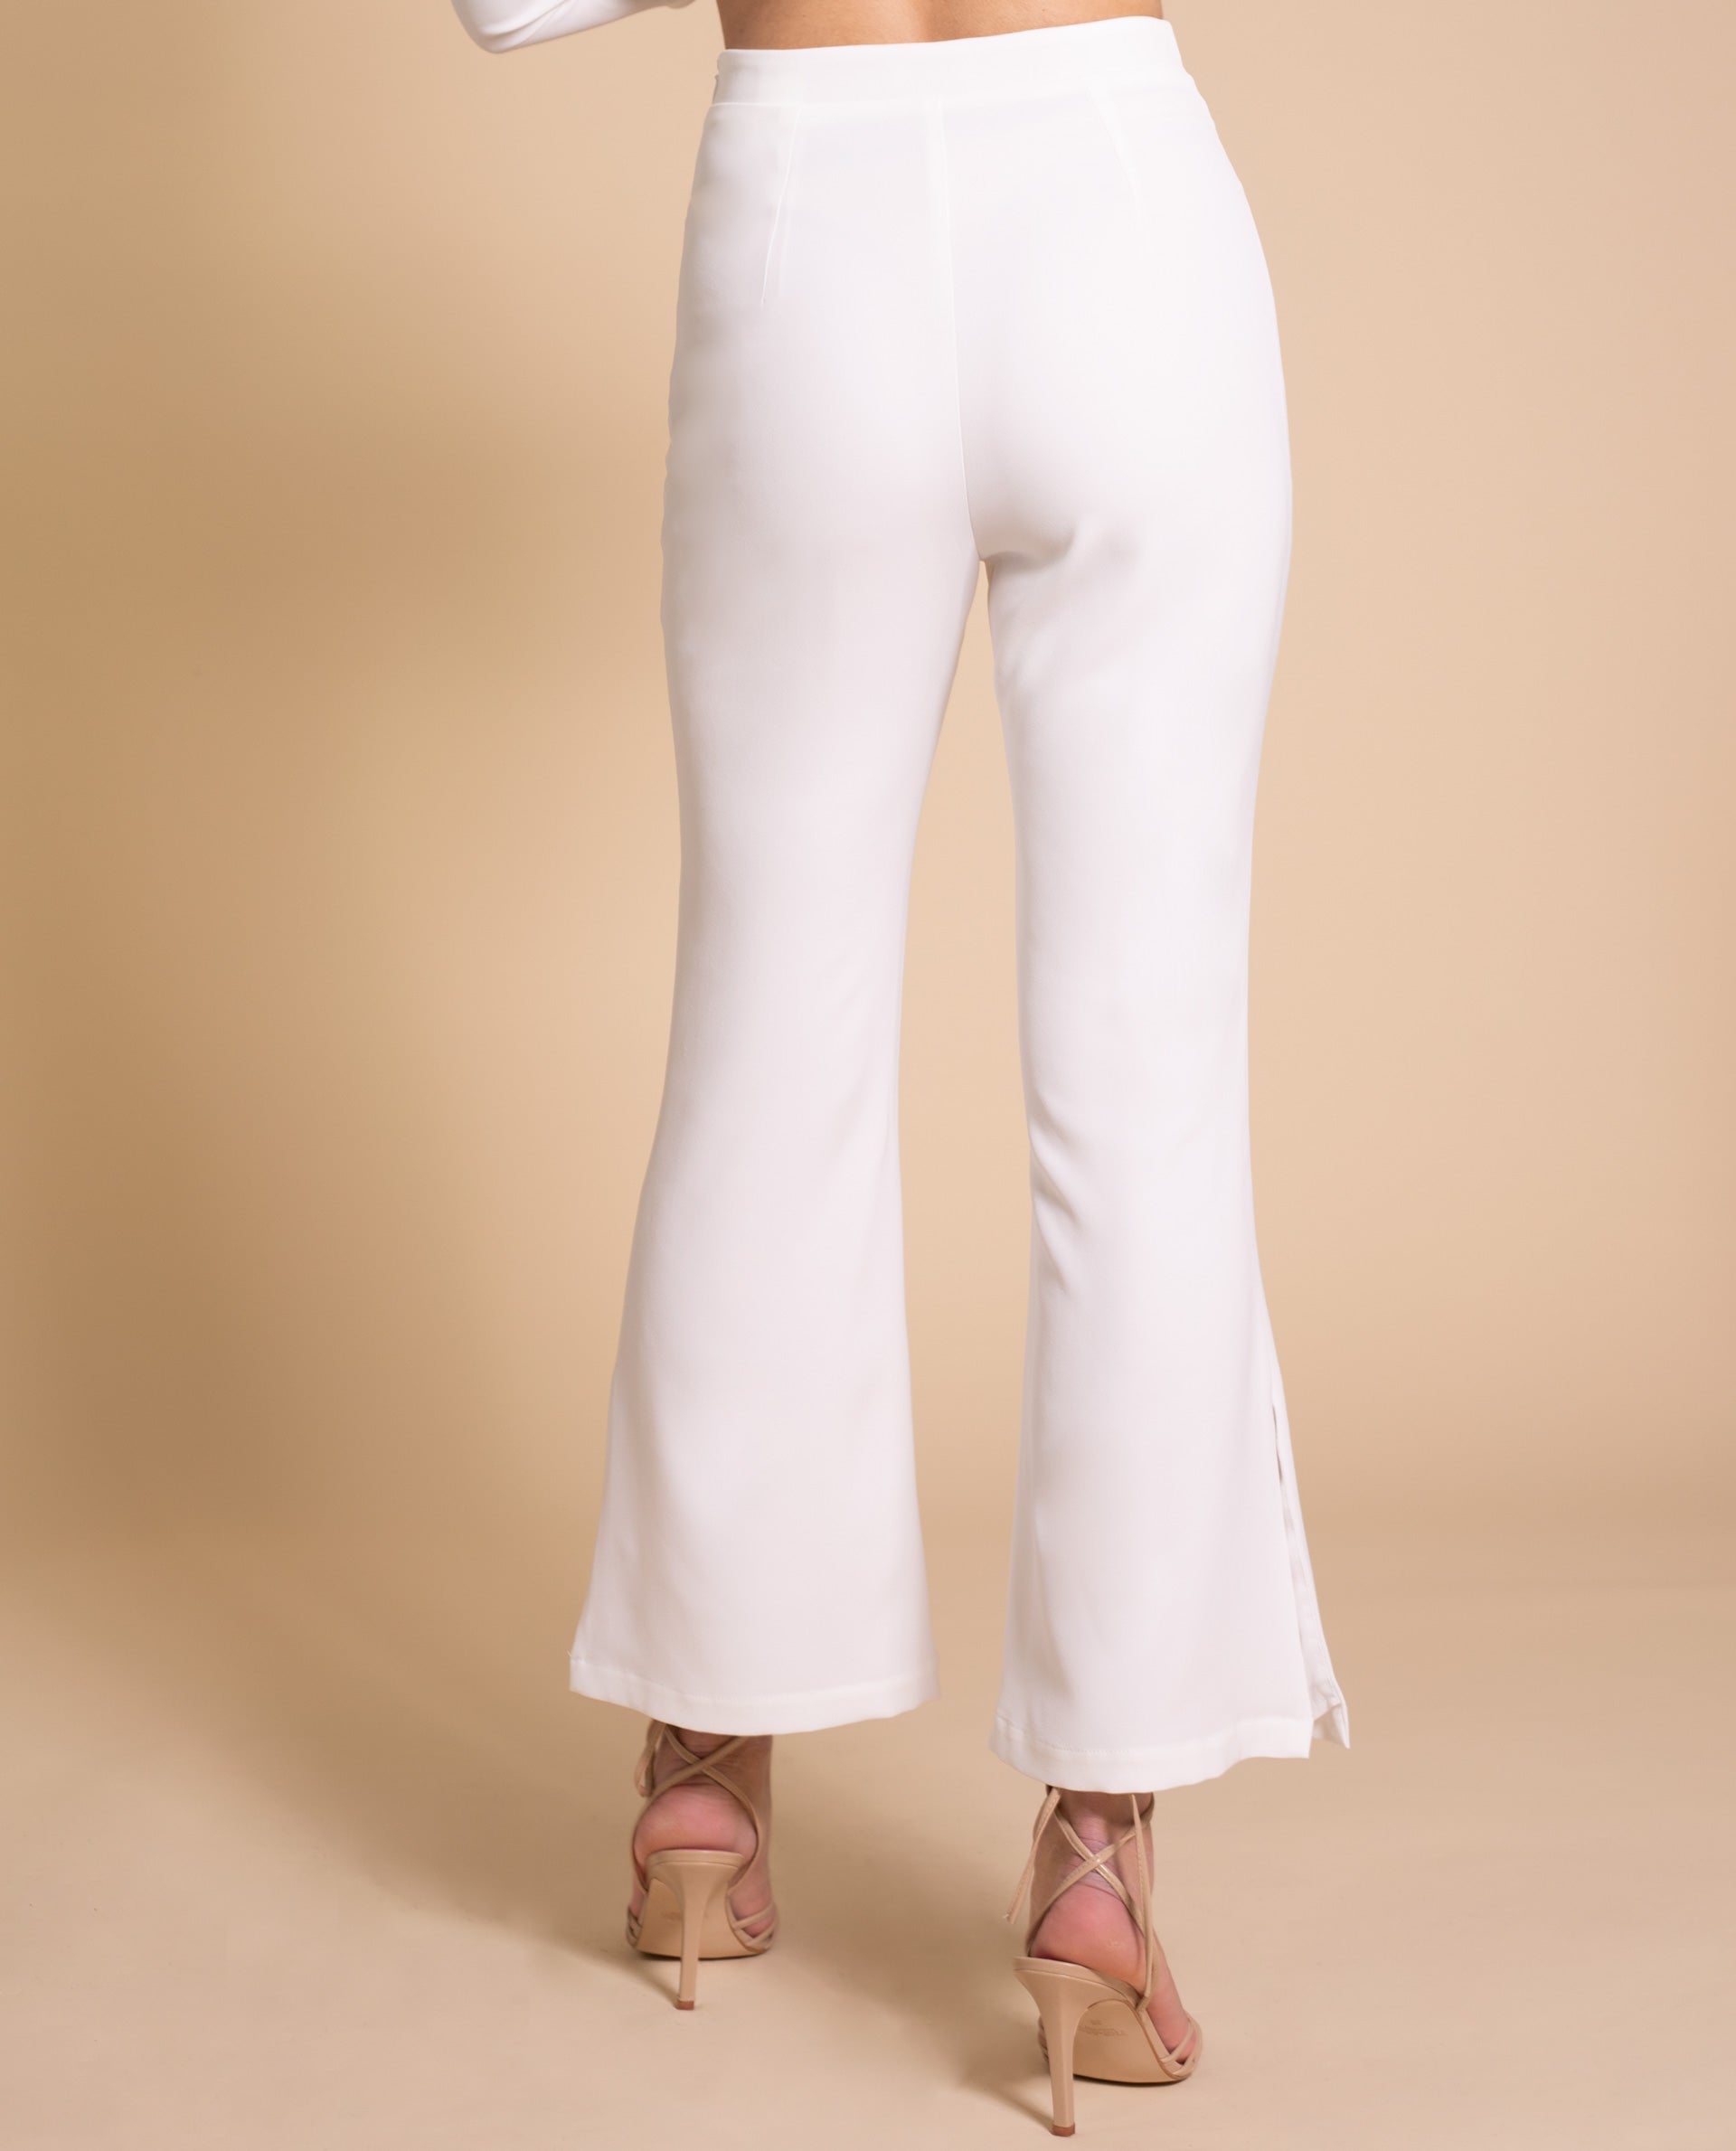 pantalón blanco mujer